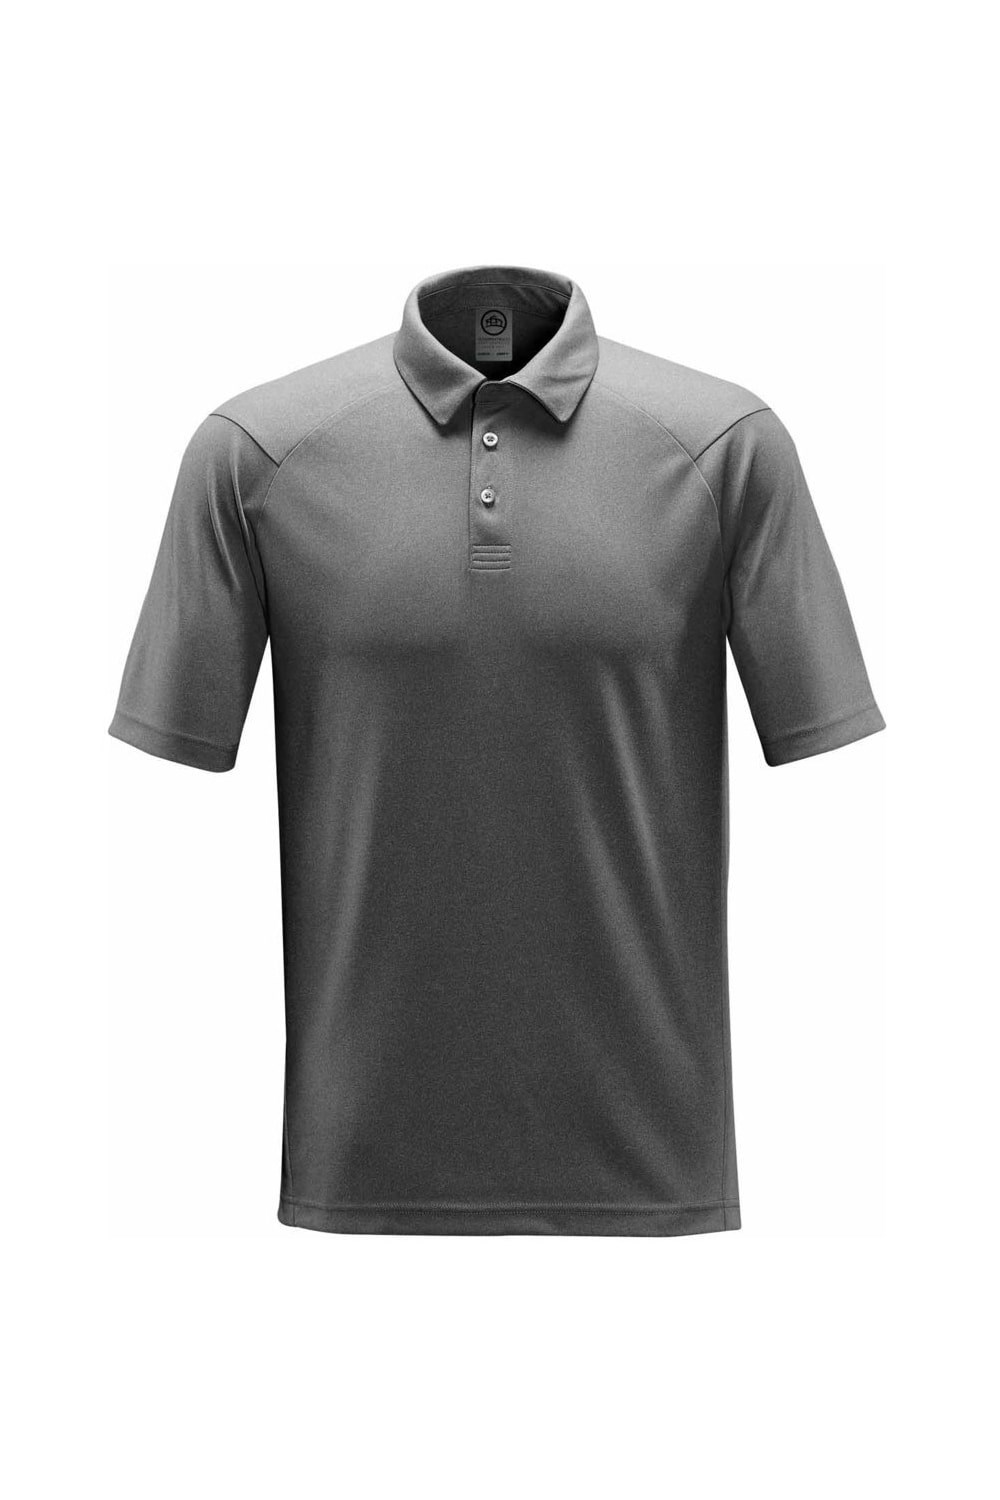 Mountain Warehouse Clyde II Mens Polo Shirt Breathable 100% Cotton Top 